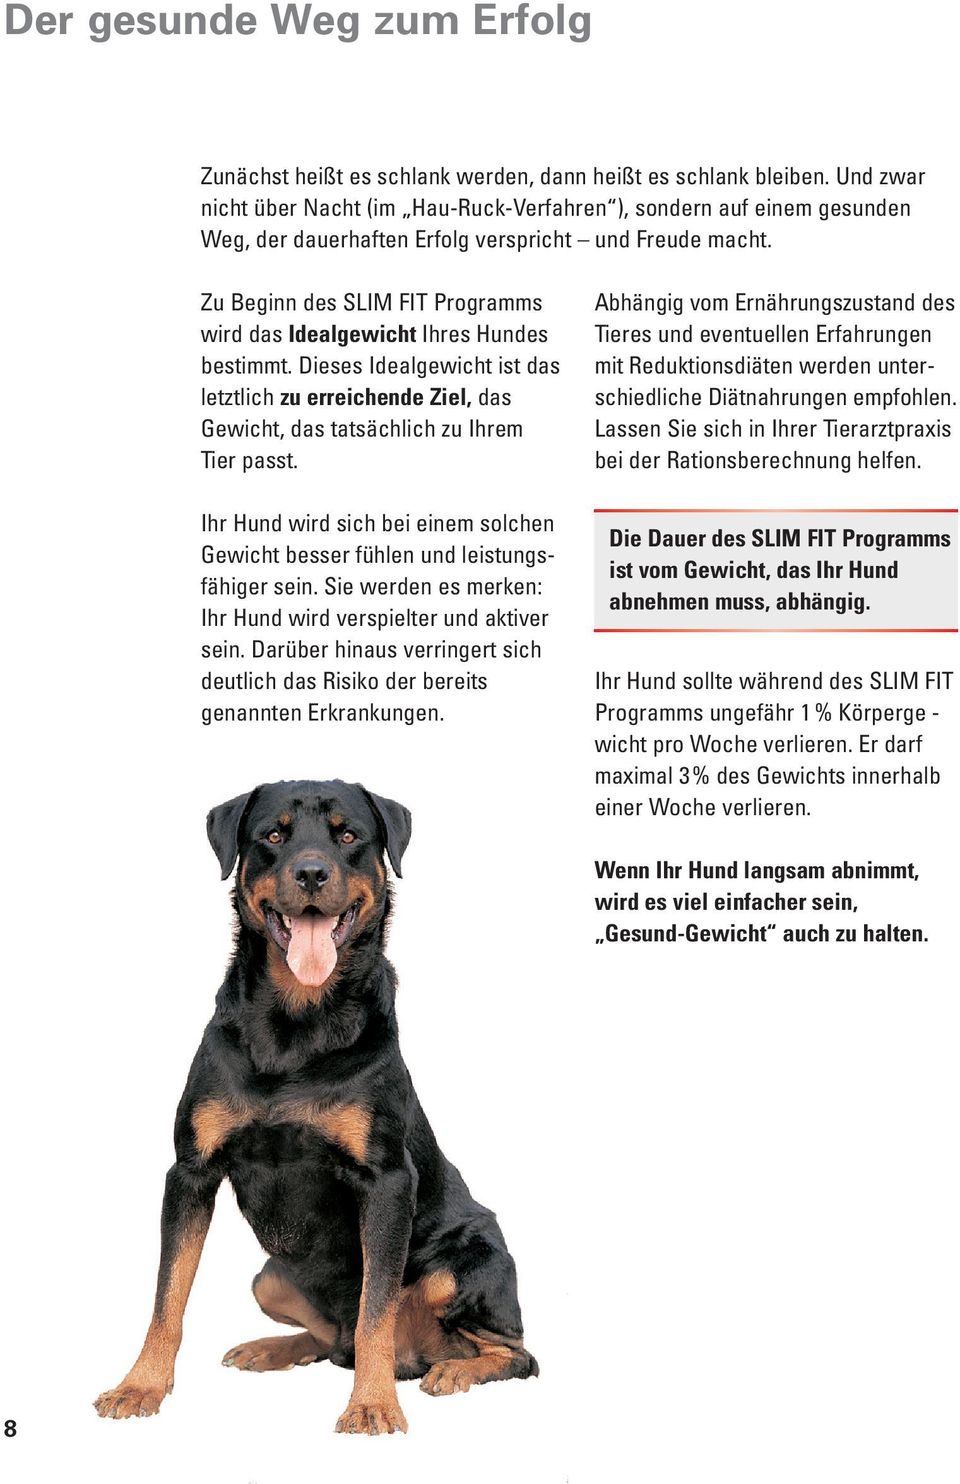 Zu Beginn des SLIM FIT Programms wird das Idealgewicht Ihres Hundes be stimmt. Dieses Idealgewicht ist das letztlich zu erreichende Ziel, das Gewicht, das tatsächlich zu Ihrem Tier passt.